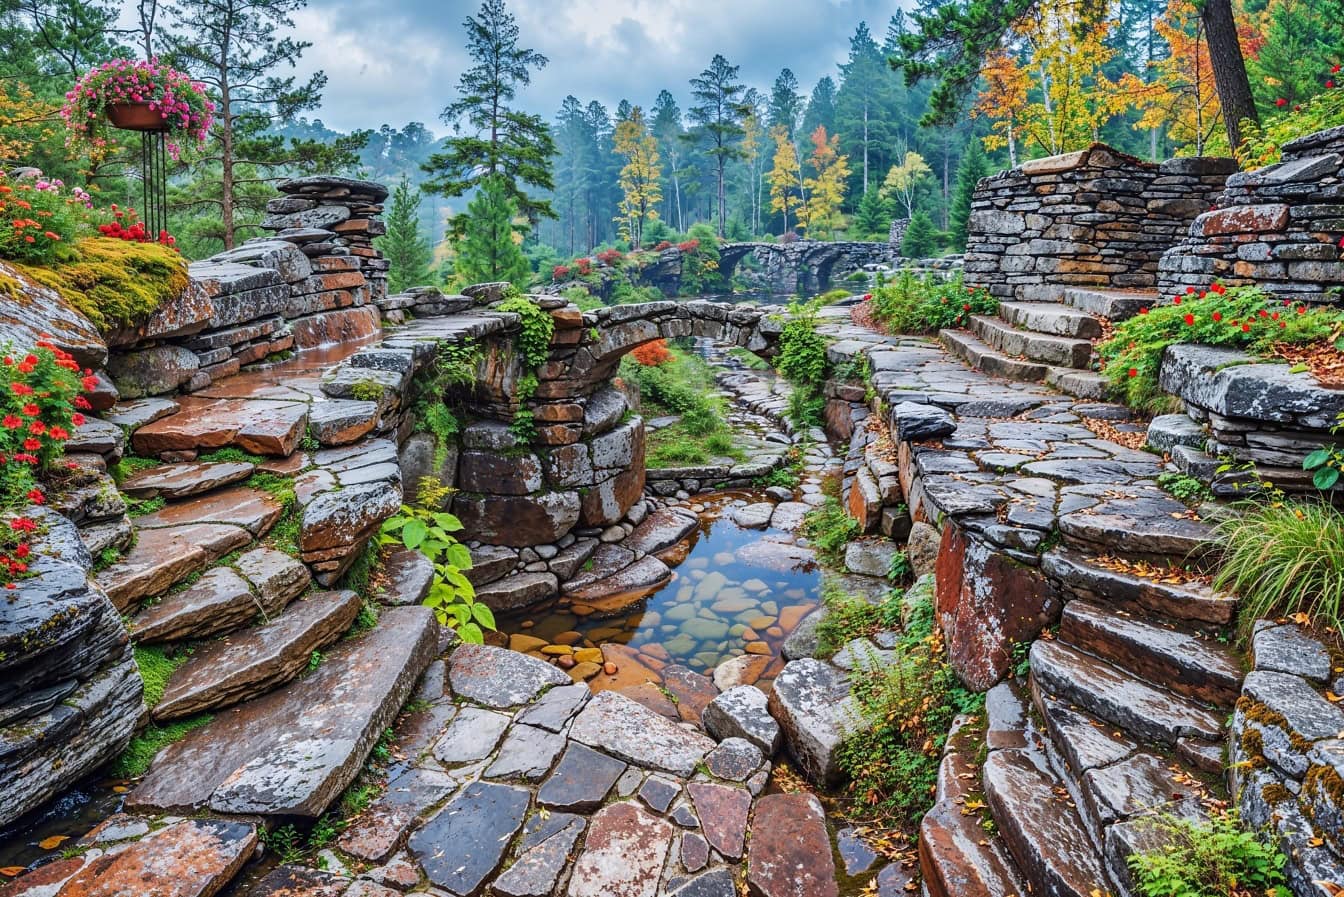 Ponte di pietra nel giardino all’interno del parco naturale in montagna